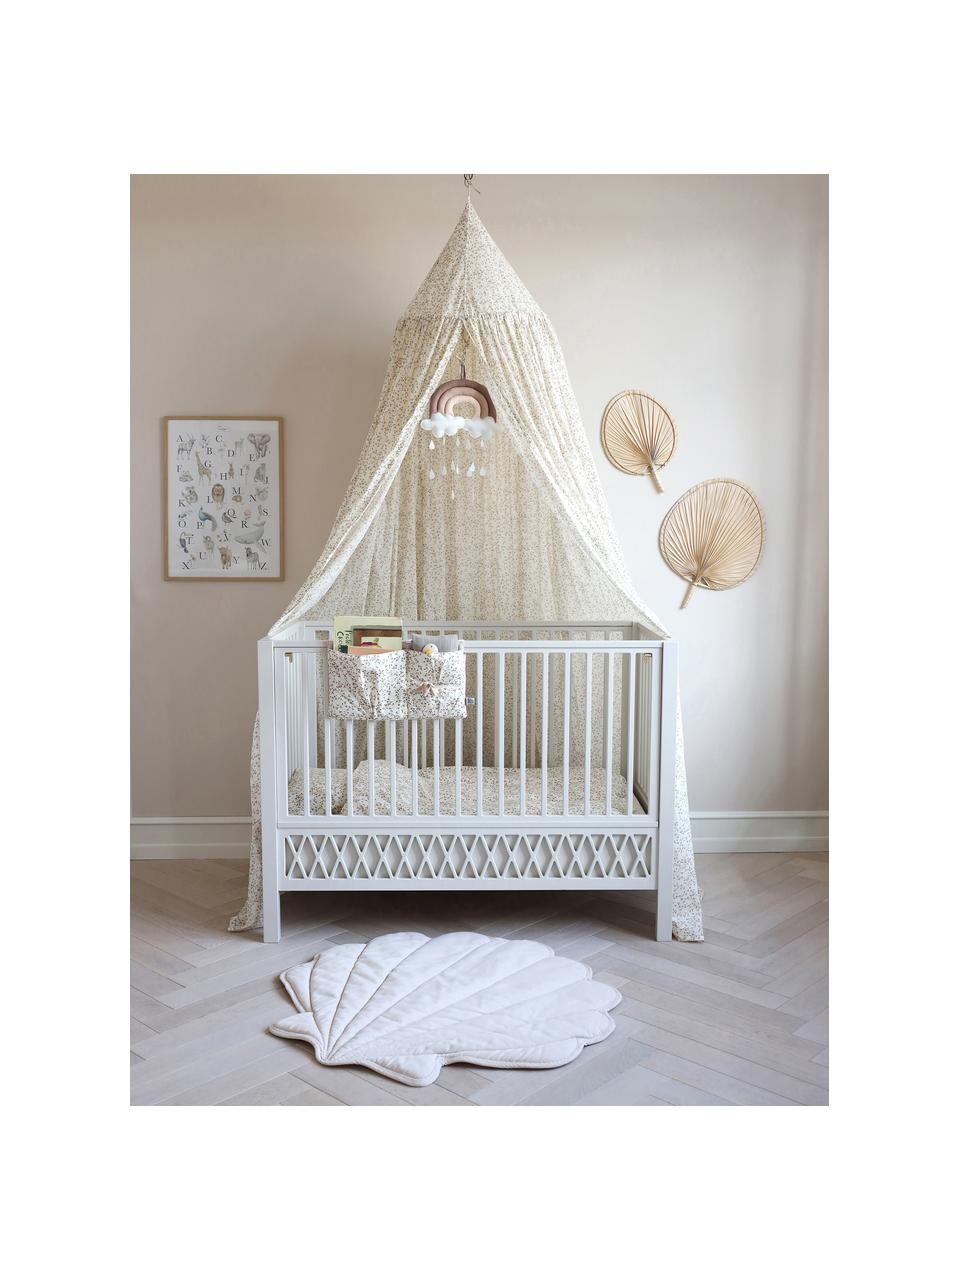 Höhenverstellbares Baby-Bett Harlequin, 60 x 120 cm, Kiefernholz, Mitteldichte Holzfaserplatte (MDF), lackiert mit VOC-freier Farbe und FSC-zertifiziert, Kiefernholz, weiss lackiert, B 60 x L 120 cm